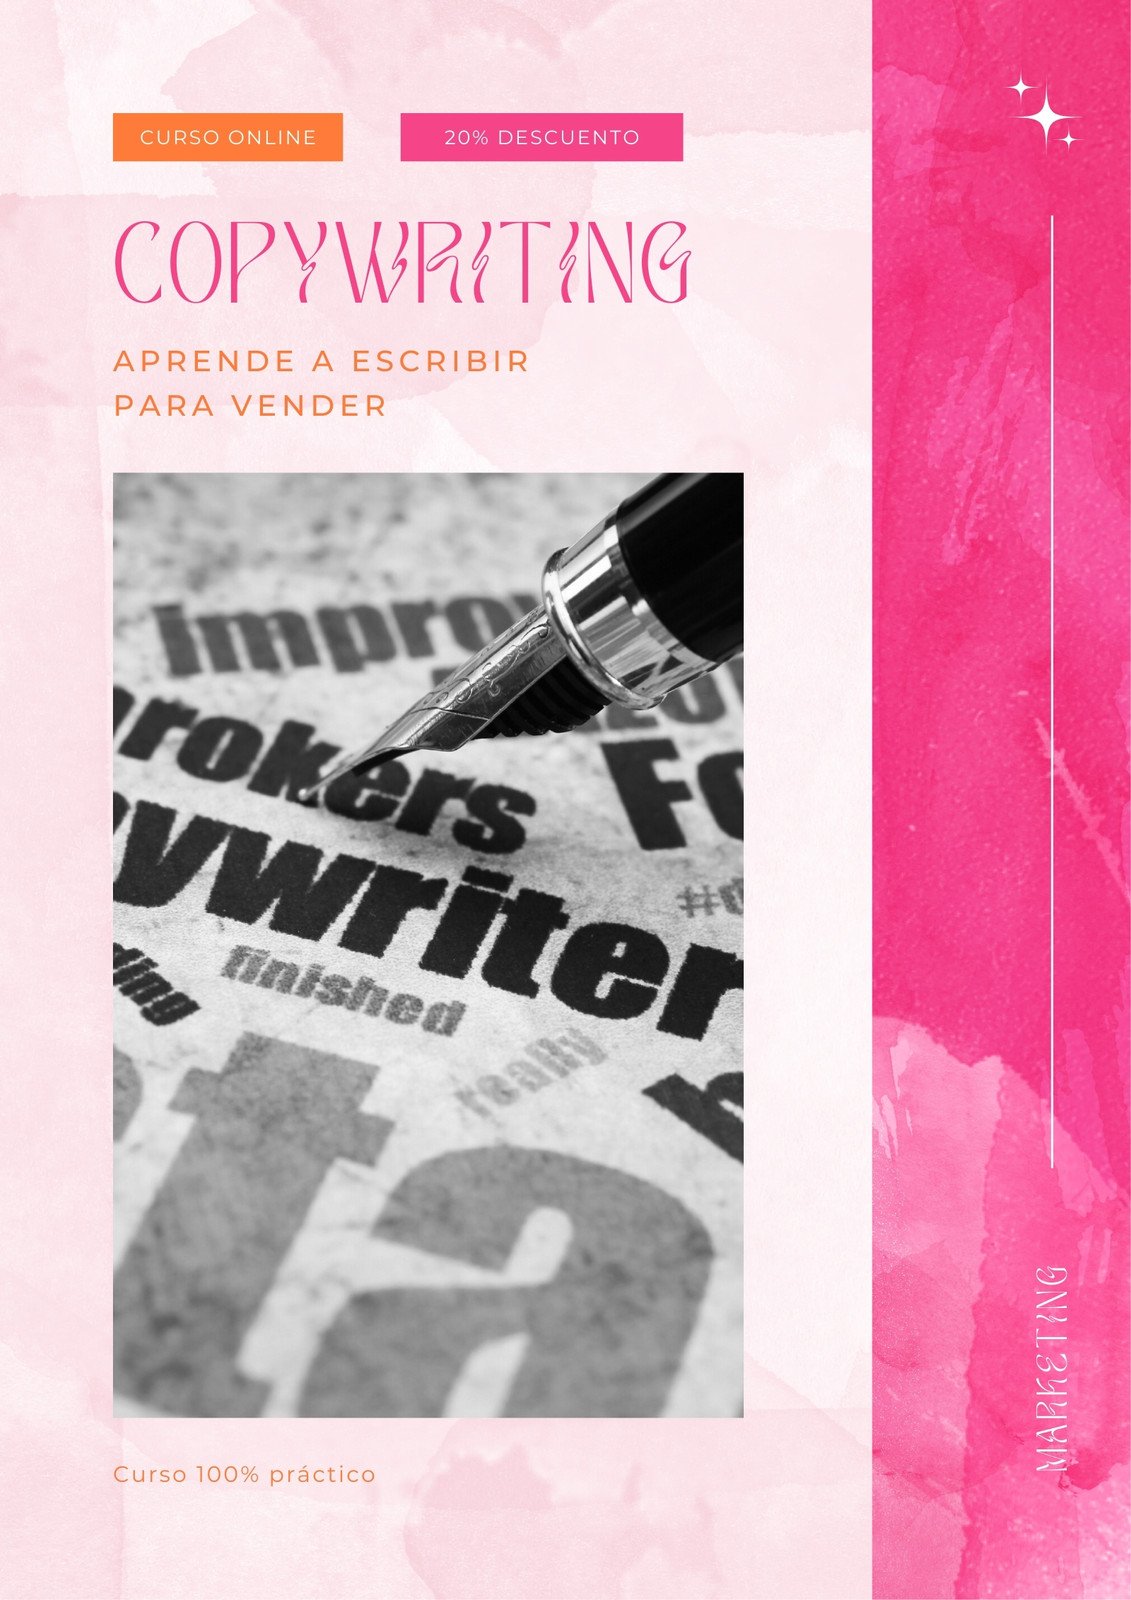 TUTORIAL LIBRO DE COLOREAR -Como Hacer y publicar un libro de colorear  usando Powerpoint y Canva 